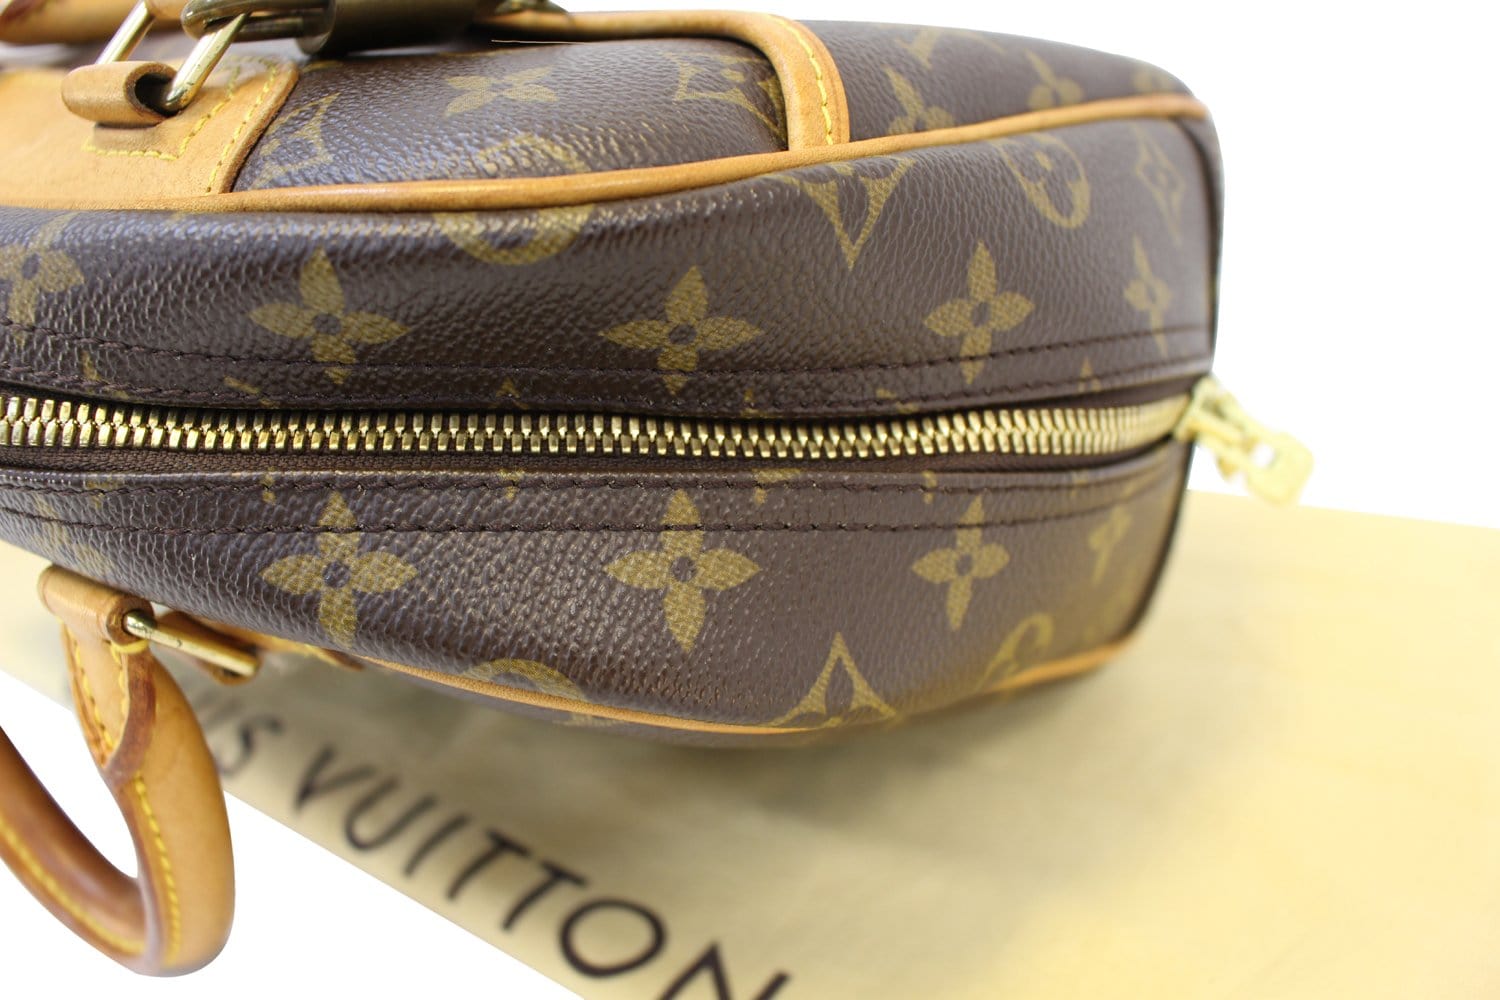 Louis Vuitton Trouville Handbag 369553